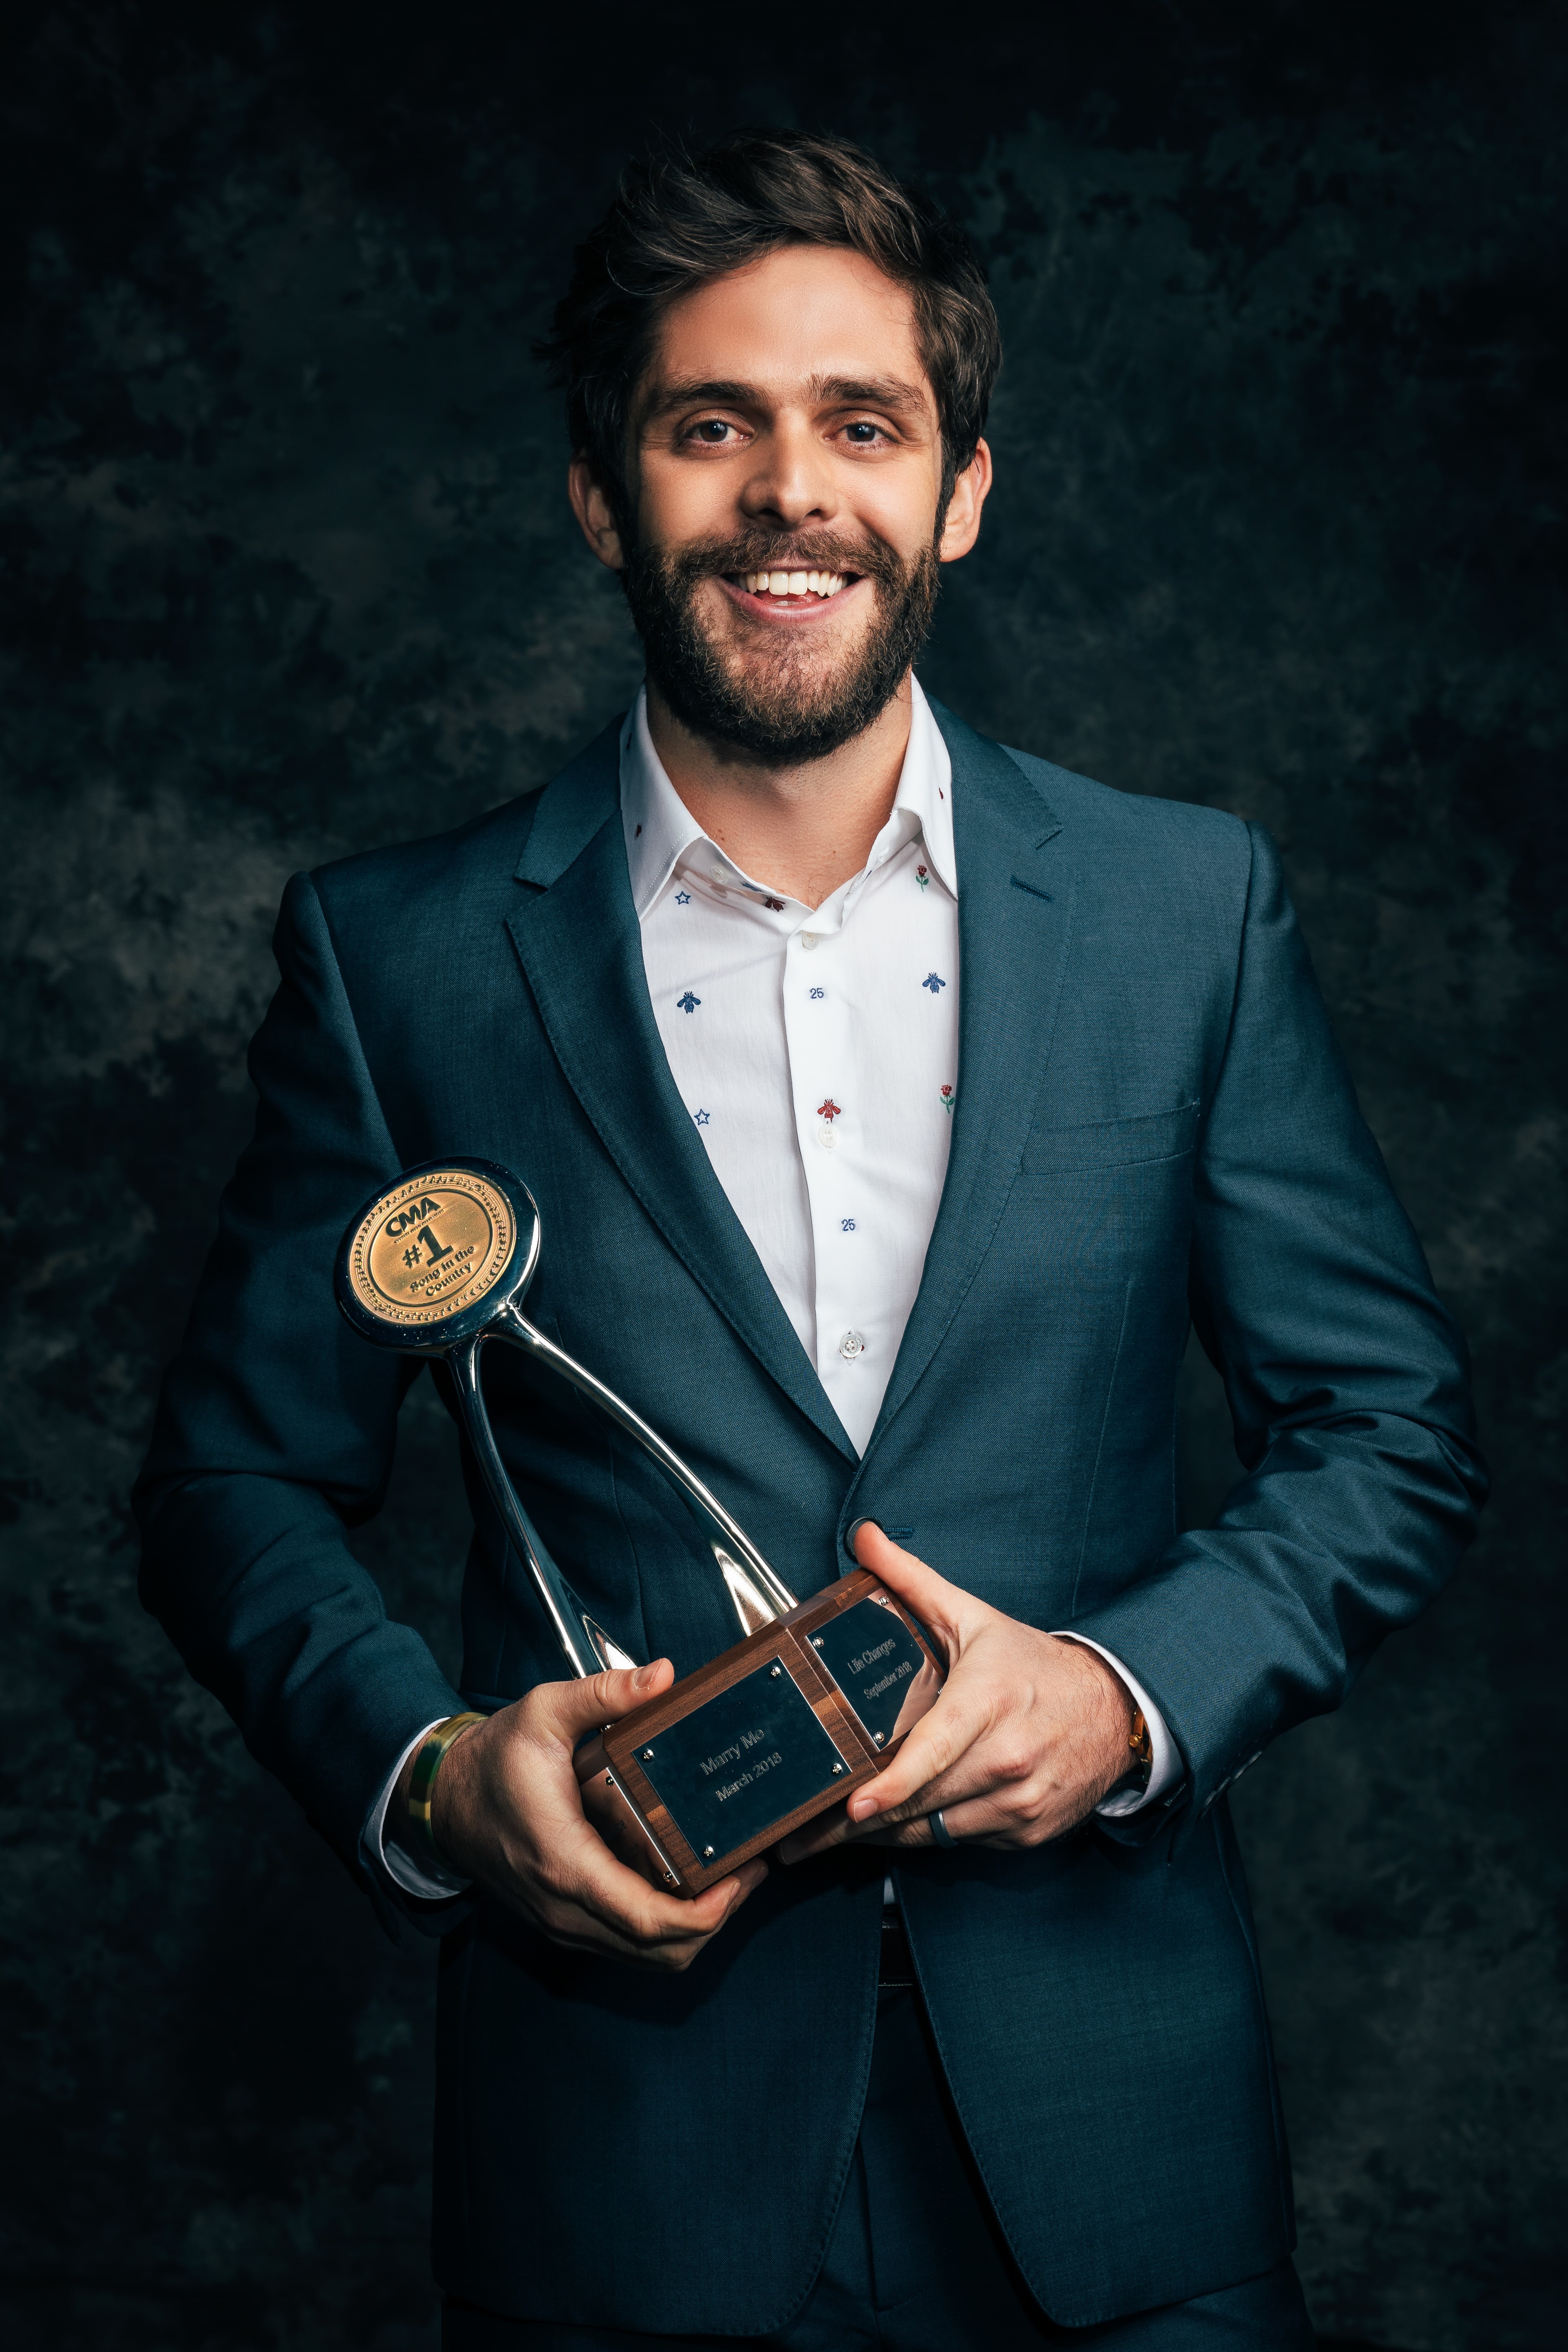 Thomas Rhett at the 2019 Triple Play Awards; Photo courtesy of CMA